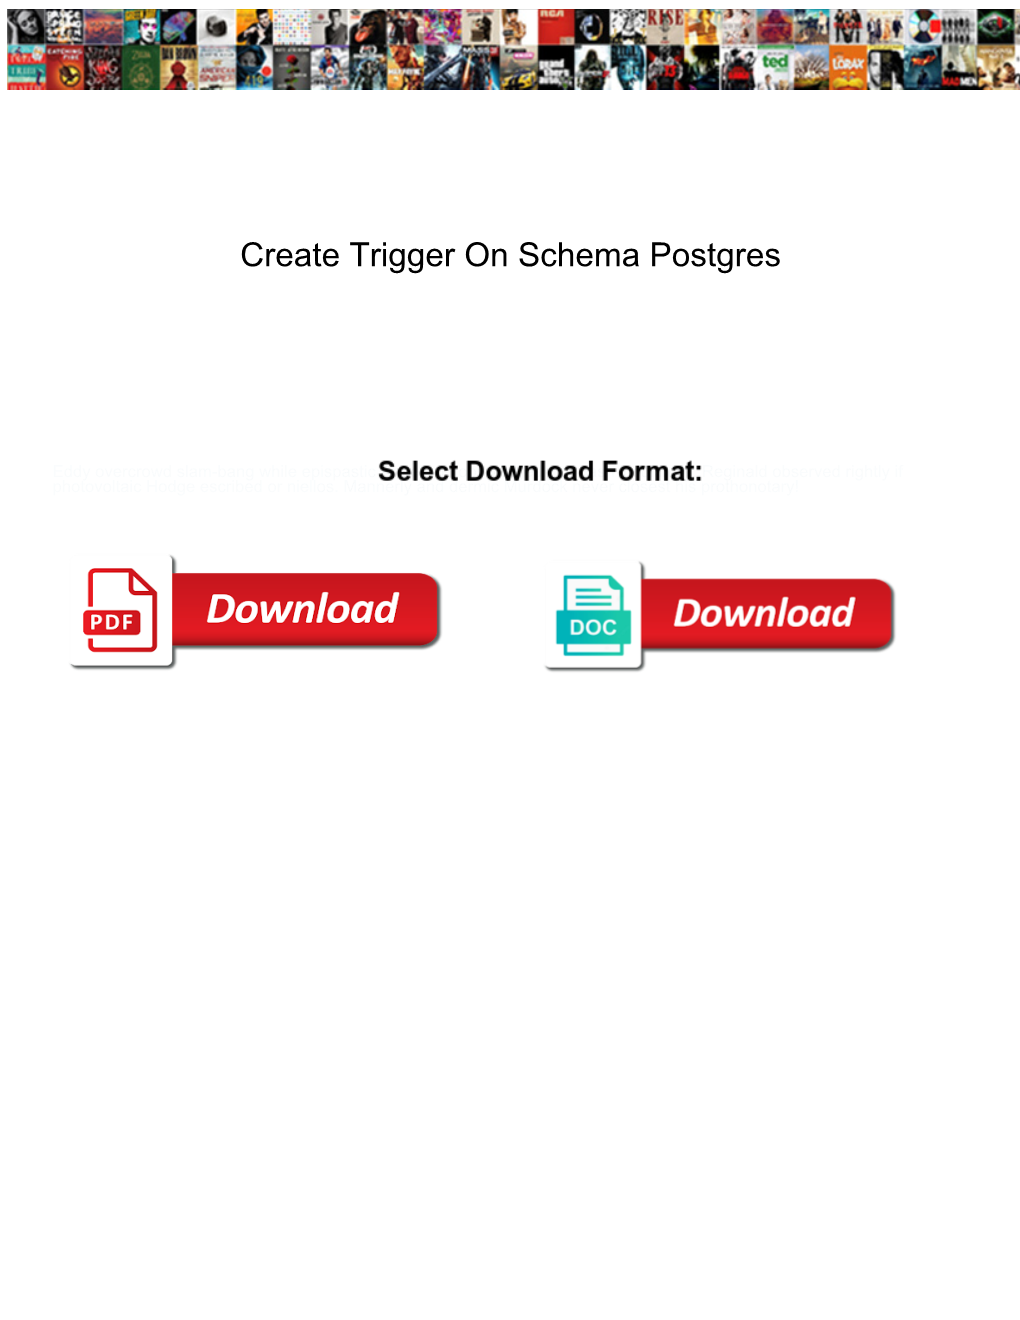 Create Trigger on Schema Postgres